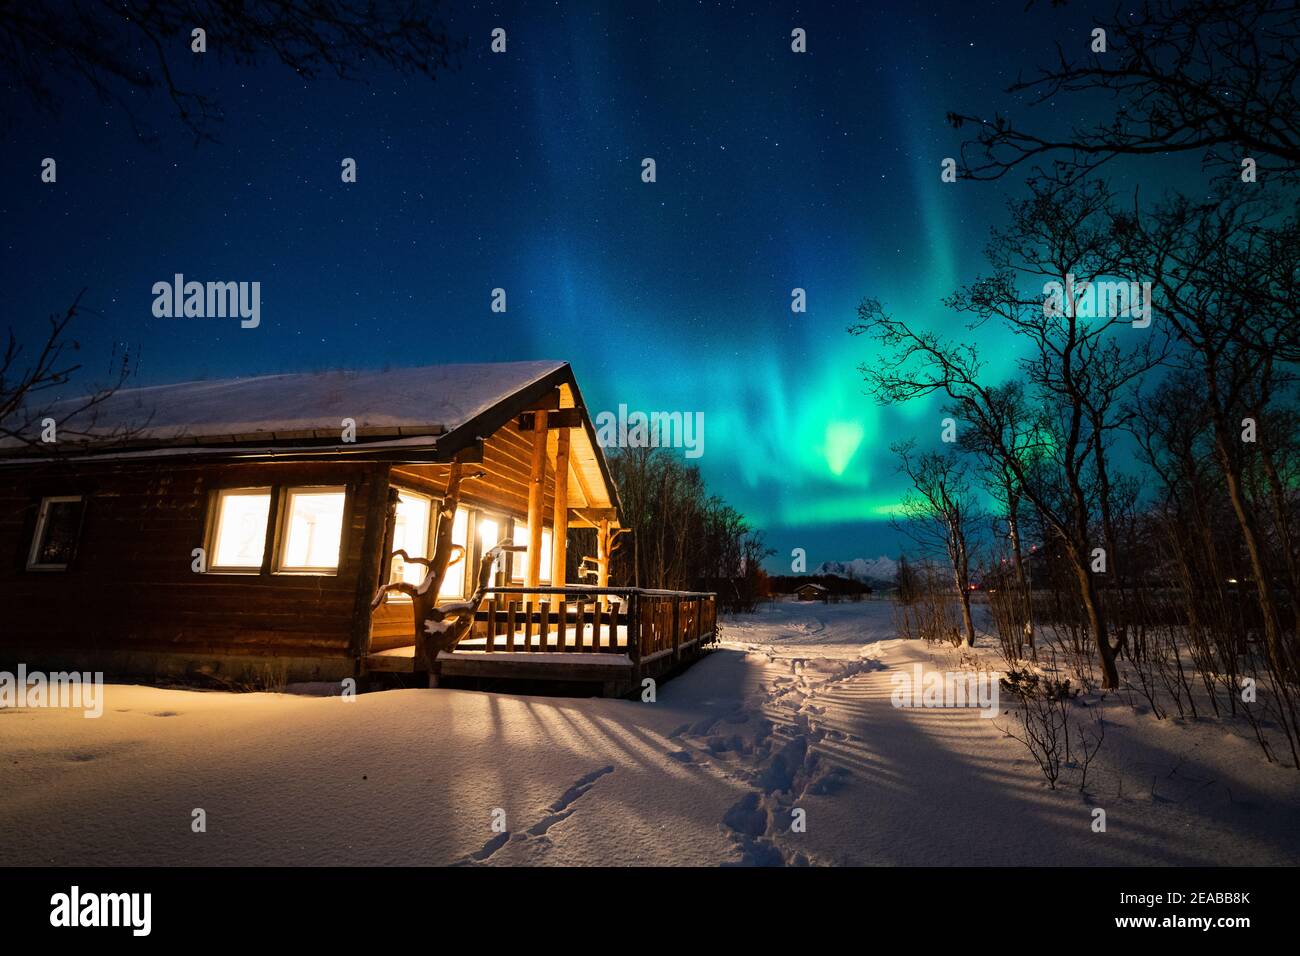 Norvège, Nord-Norge, Storslett, hiver, Bois, cabine, lumière, nuit, aurore, aurores boréales, neige Banque D'Images